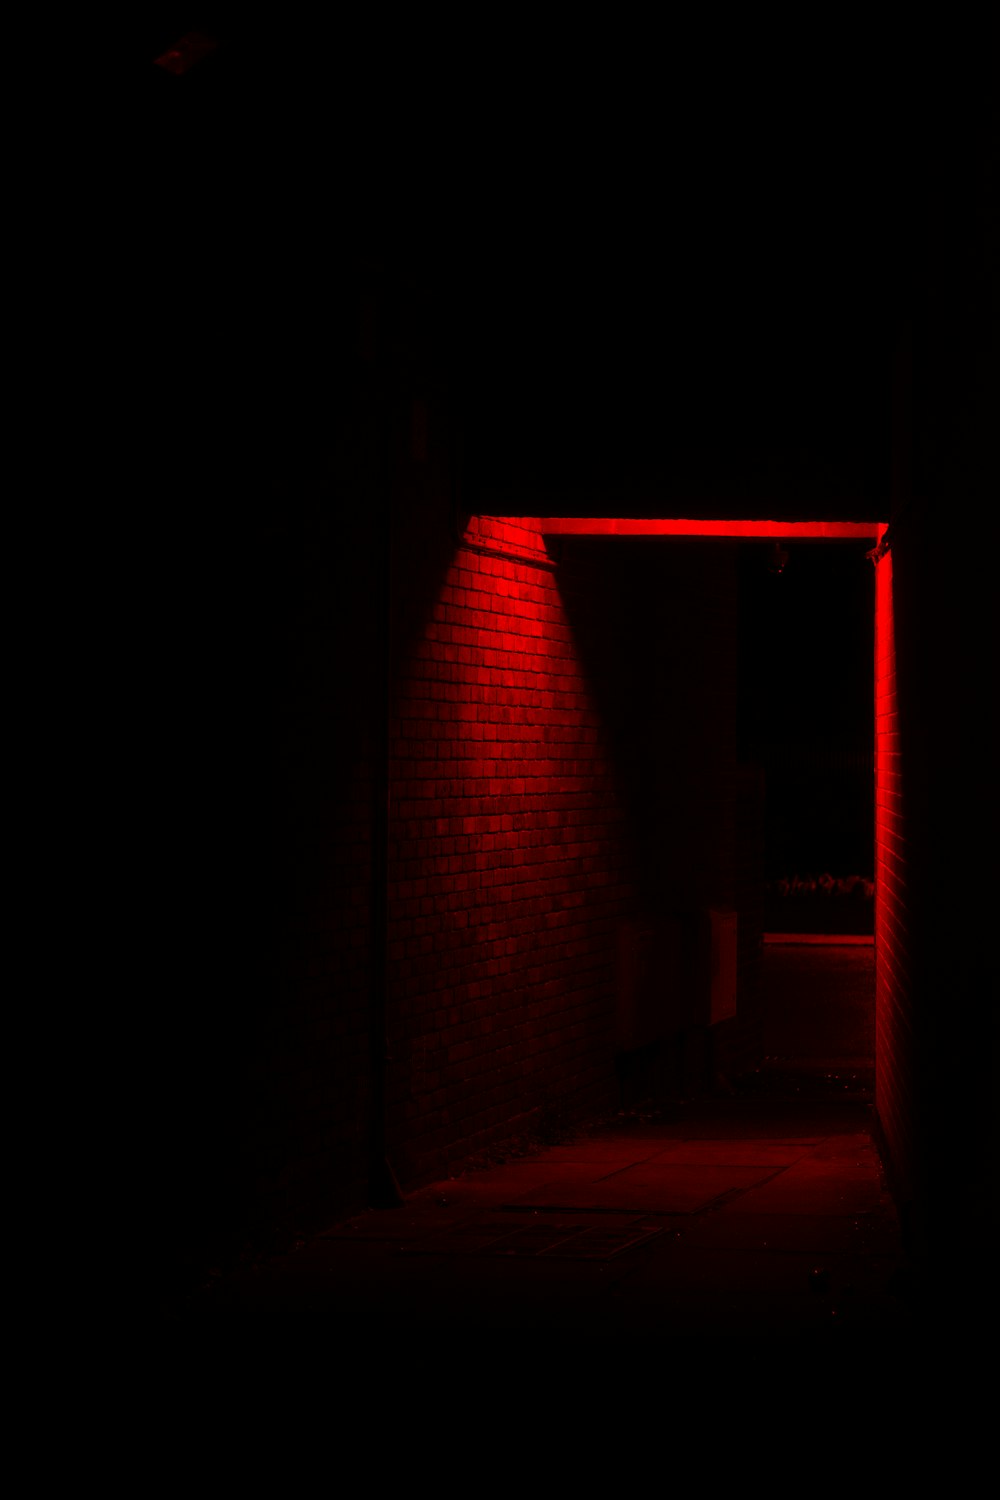 Himmel desillusion på vegne af A red light in a dark room photo – Free Light Image on Unsplash